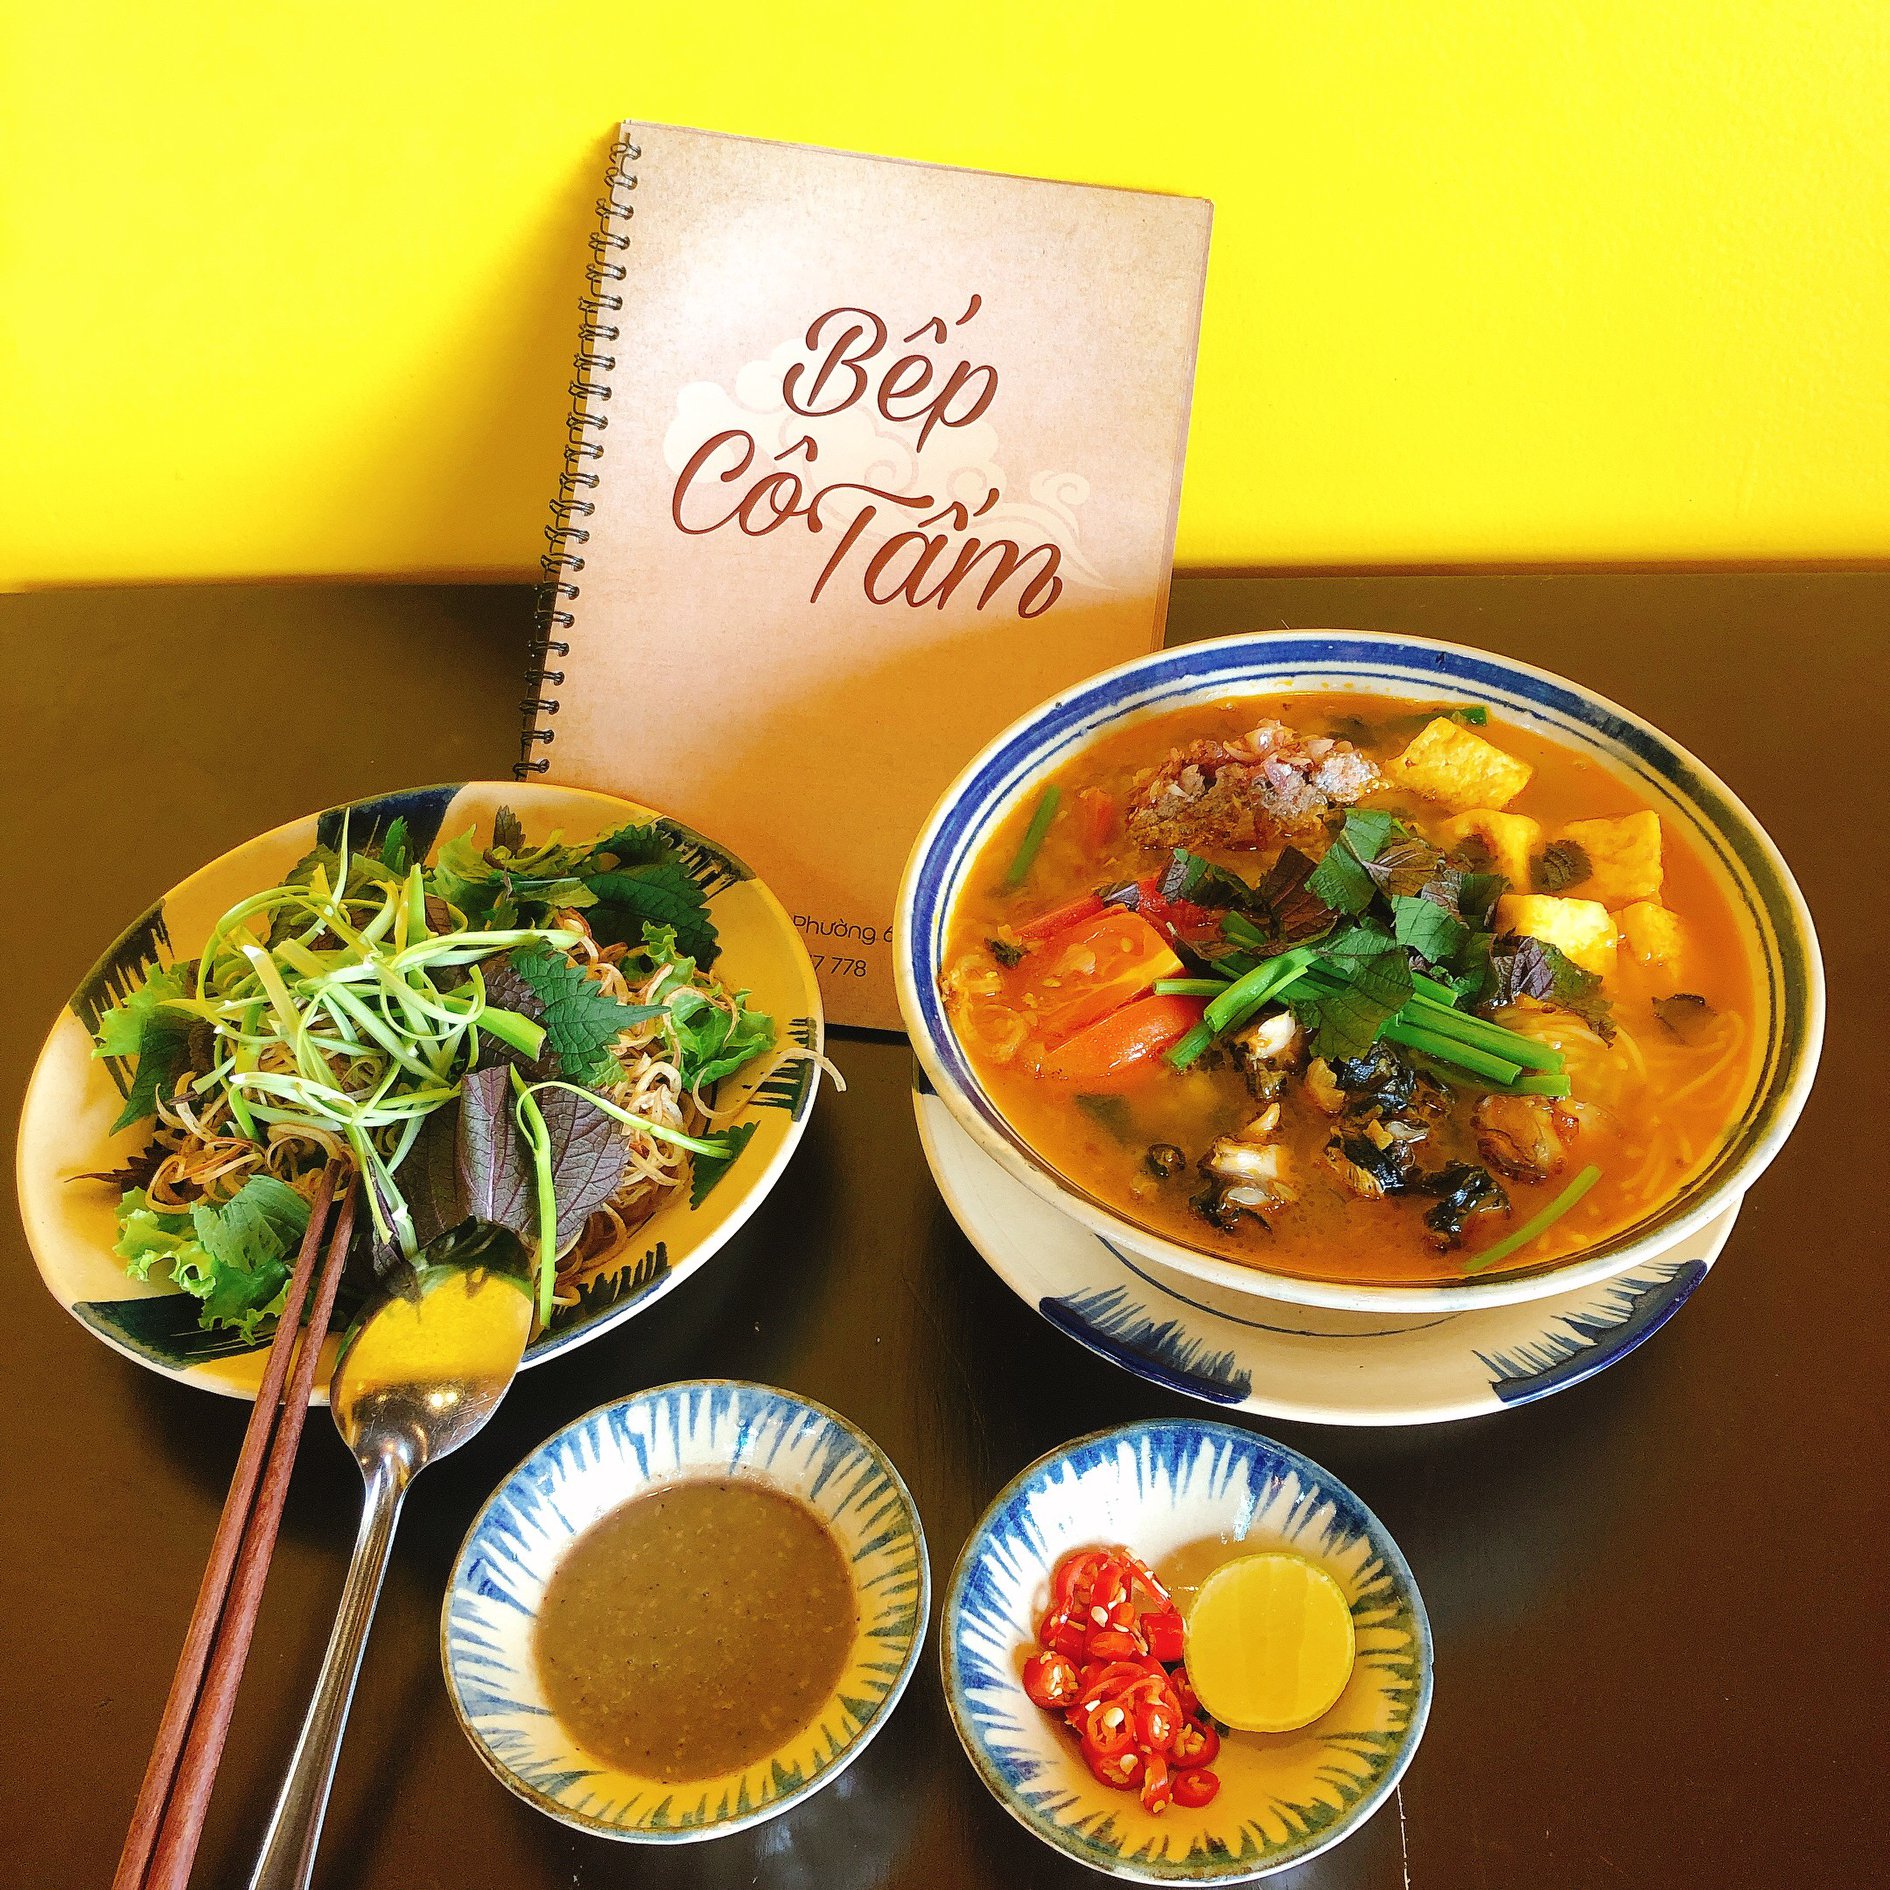 【ダラット】ベトナム料理「ベップコータム」、ダラットに2店舗目を開店